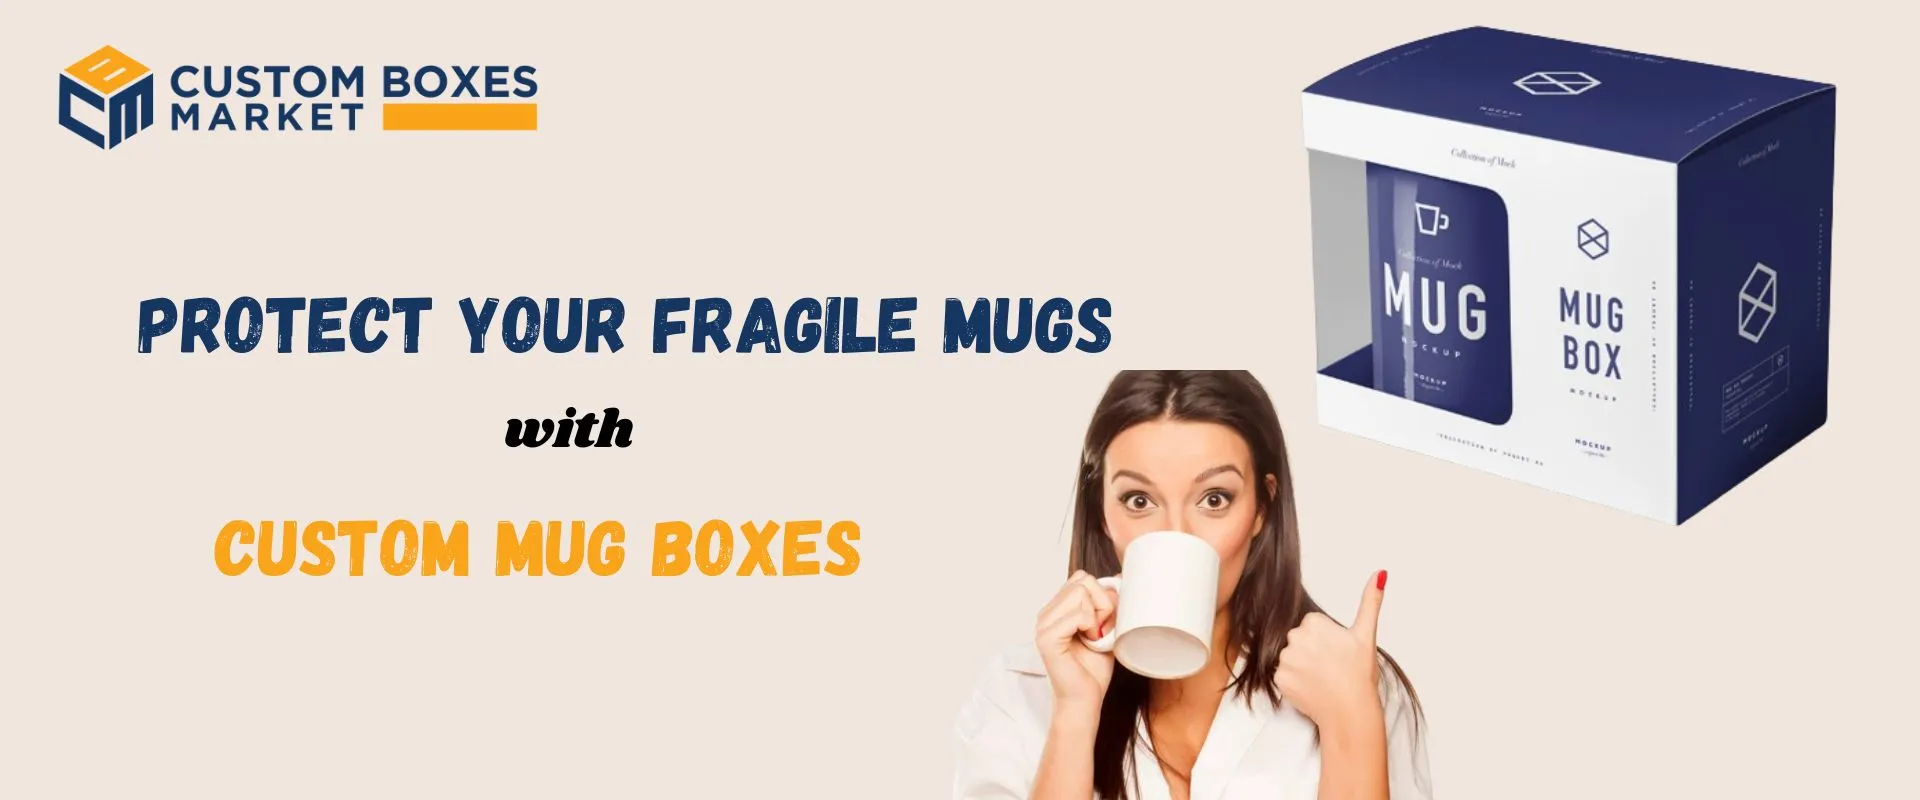 Protect Your Fragile Mugs With Custom Mug Boxes